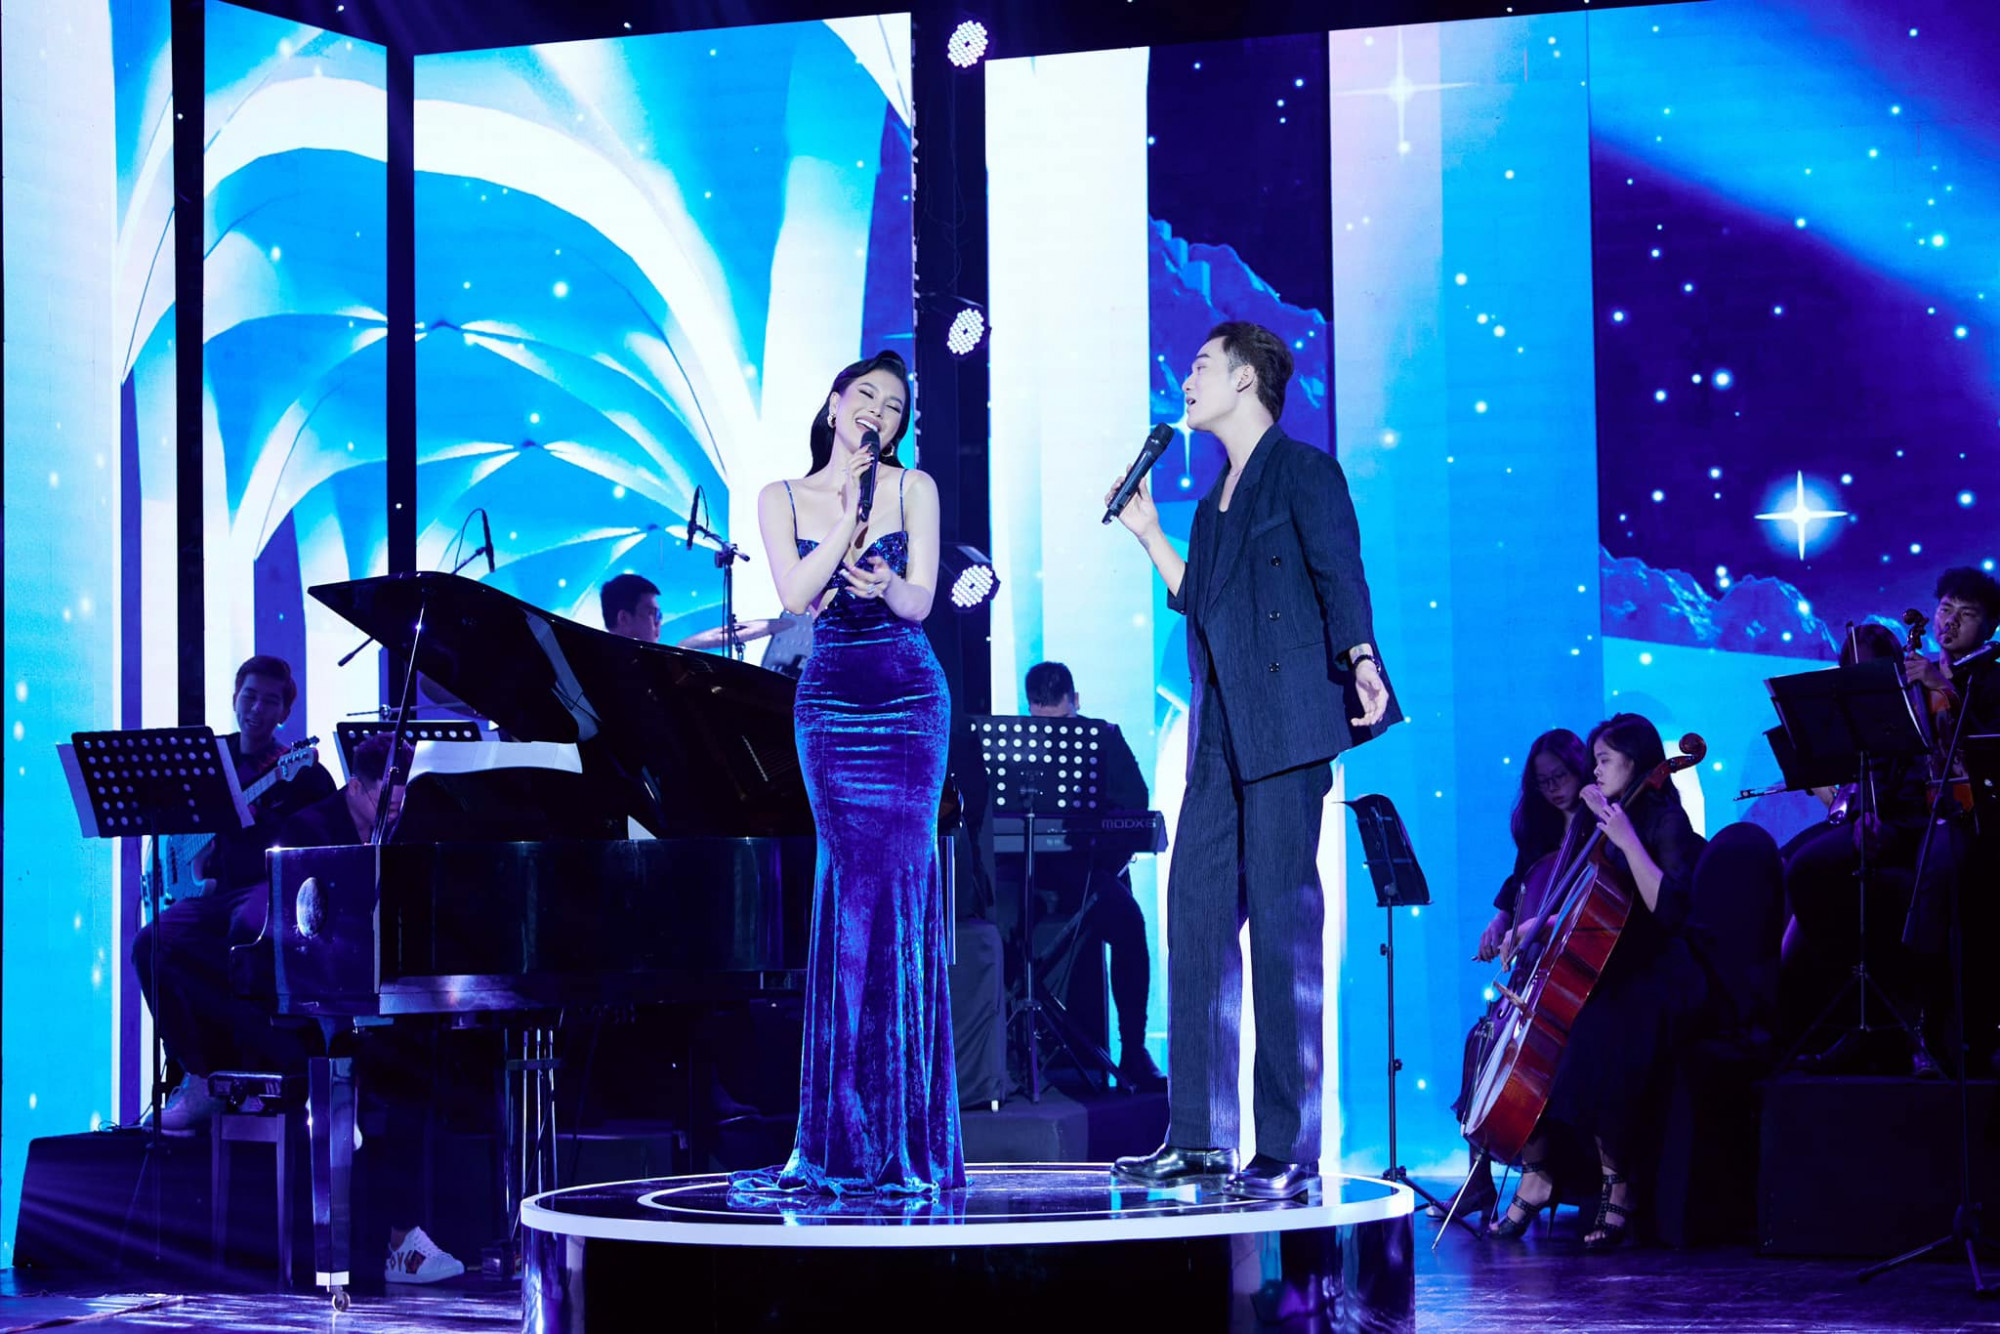 Lily Chen kết hợp với ca sĩ Ali Hoàng Dương trong chương trình